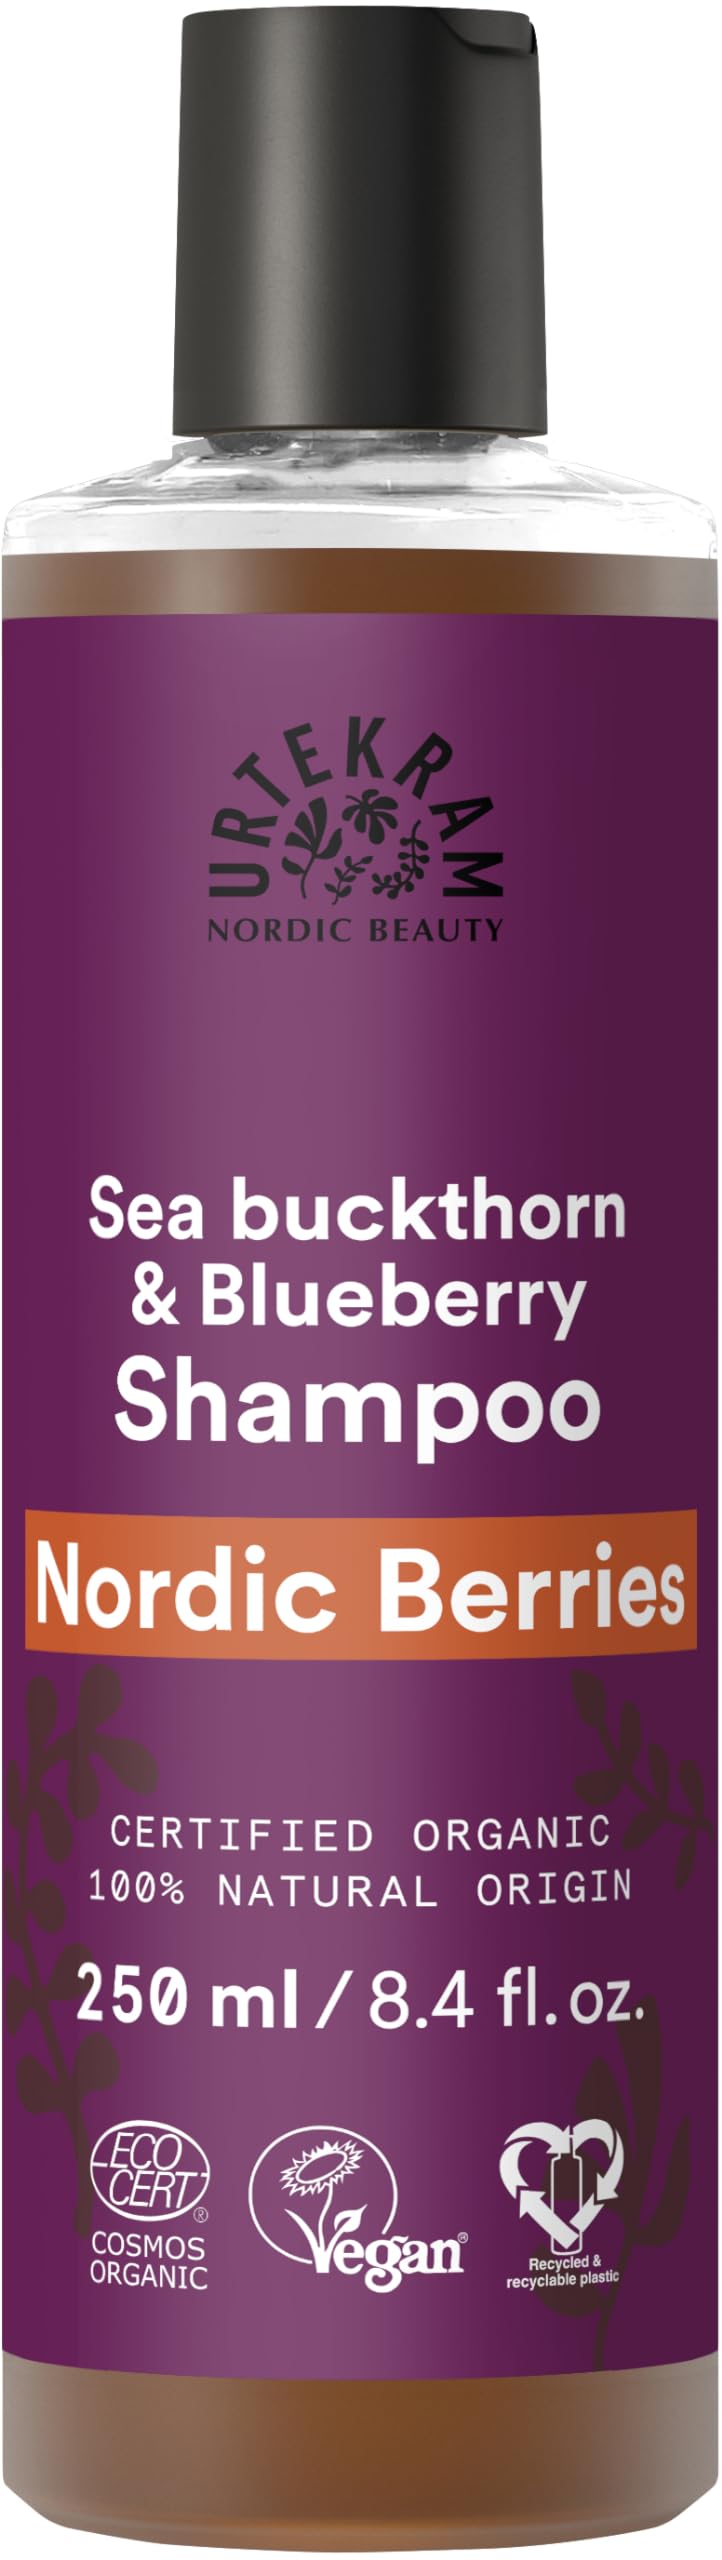 Bio Urtekram Nordic Berries Shampoo strapaziertes Haar 250 ml (6 x 250 ml)